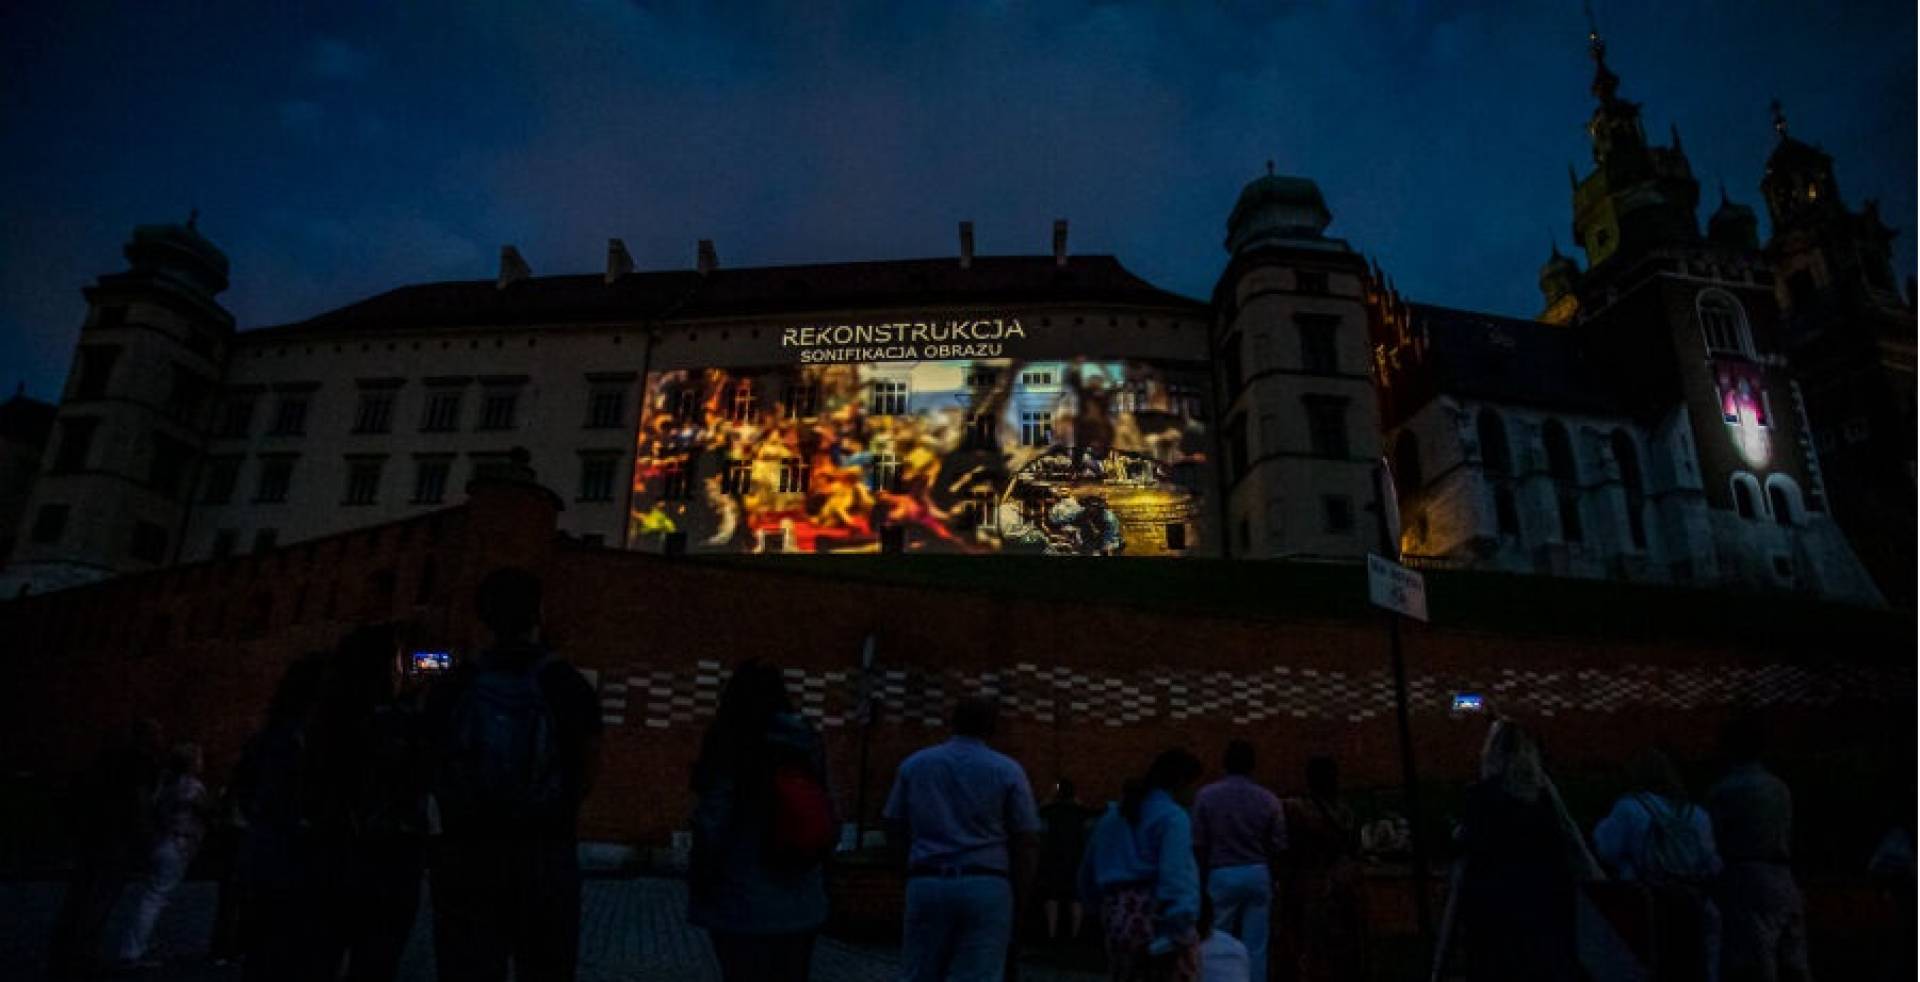 Spektakularny pokaz na Wawelu. A na Rynku stanął styropianowy dzwon